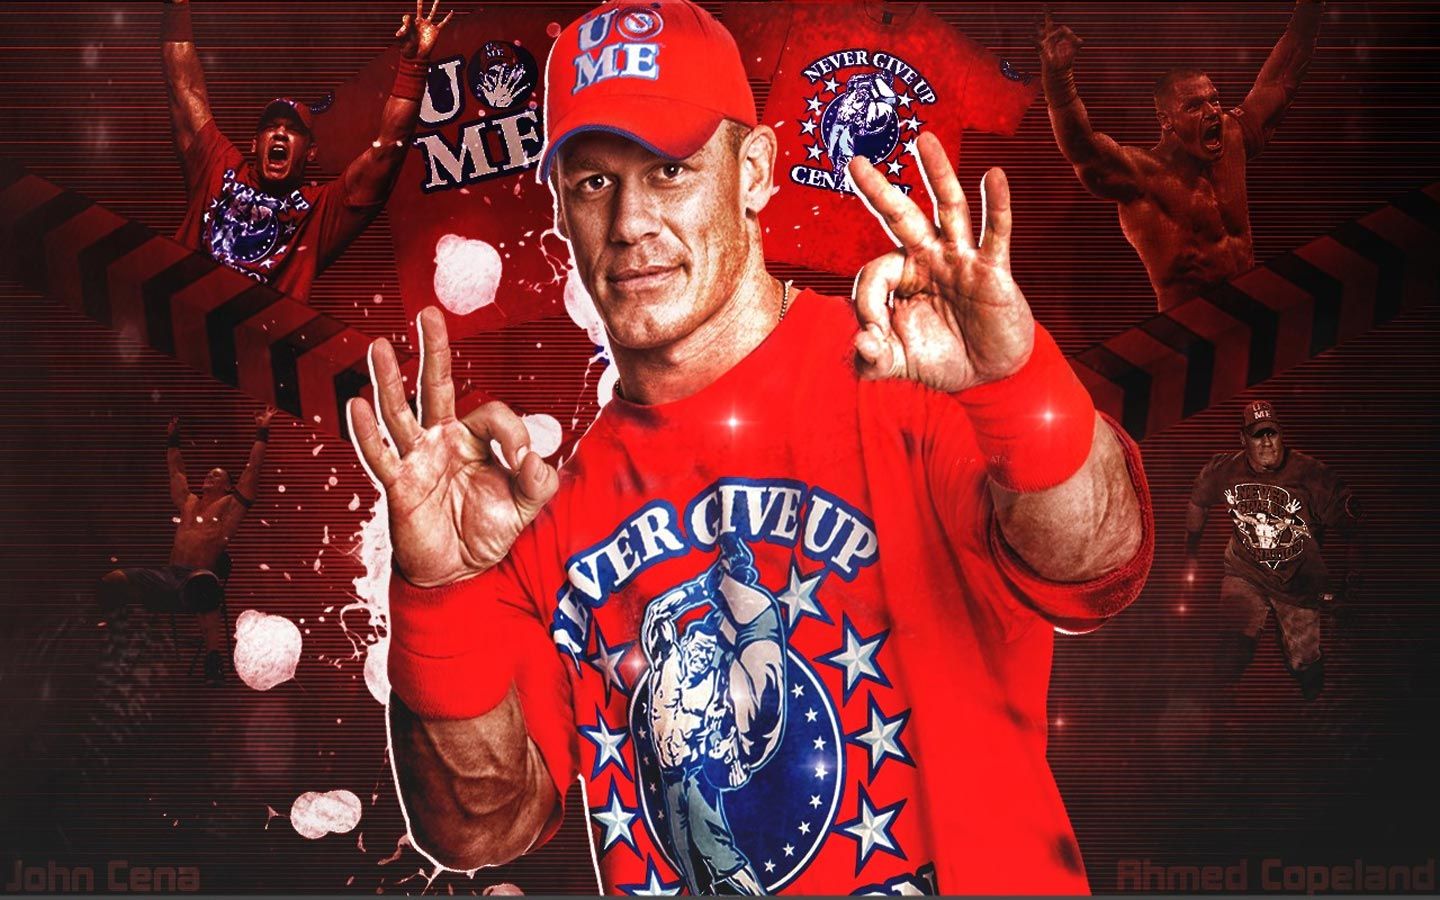 John Cena Never Give Up Wallpaper #8818 Wallpaper | ForWallpapers.com